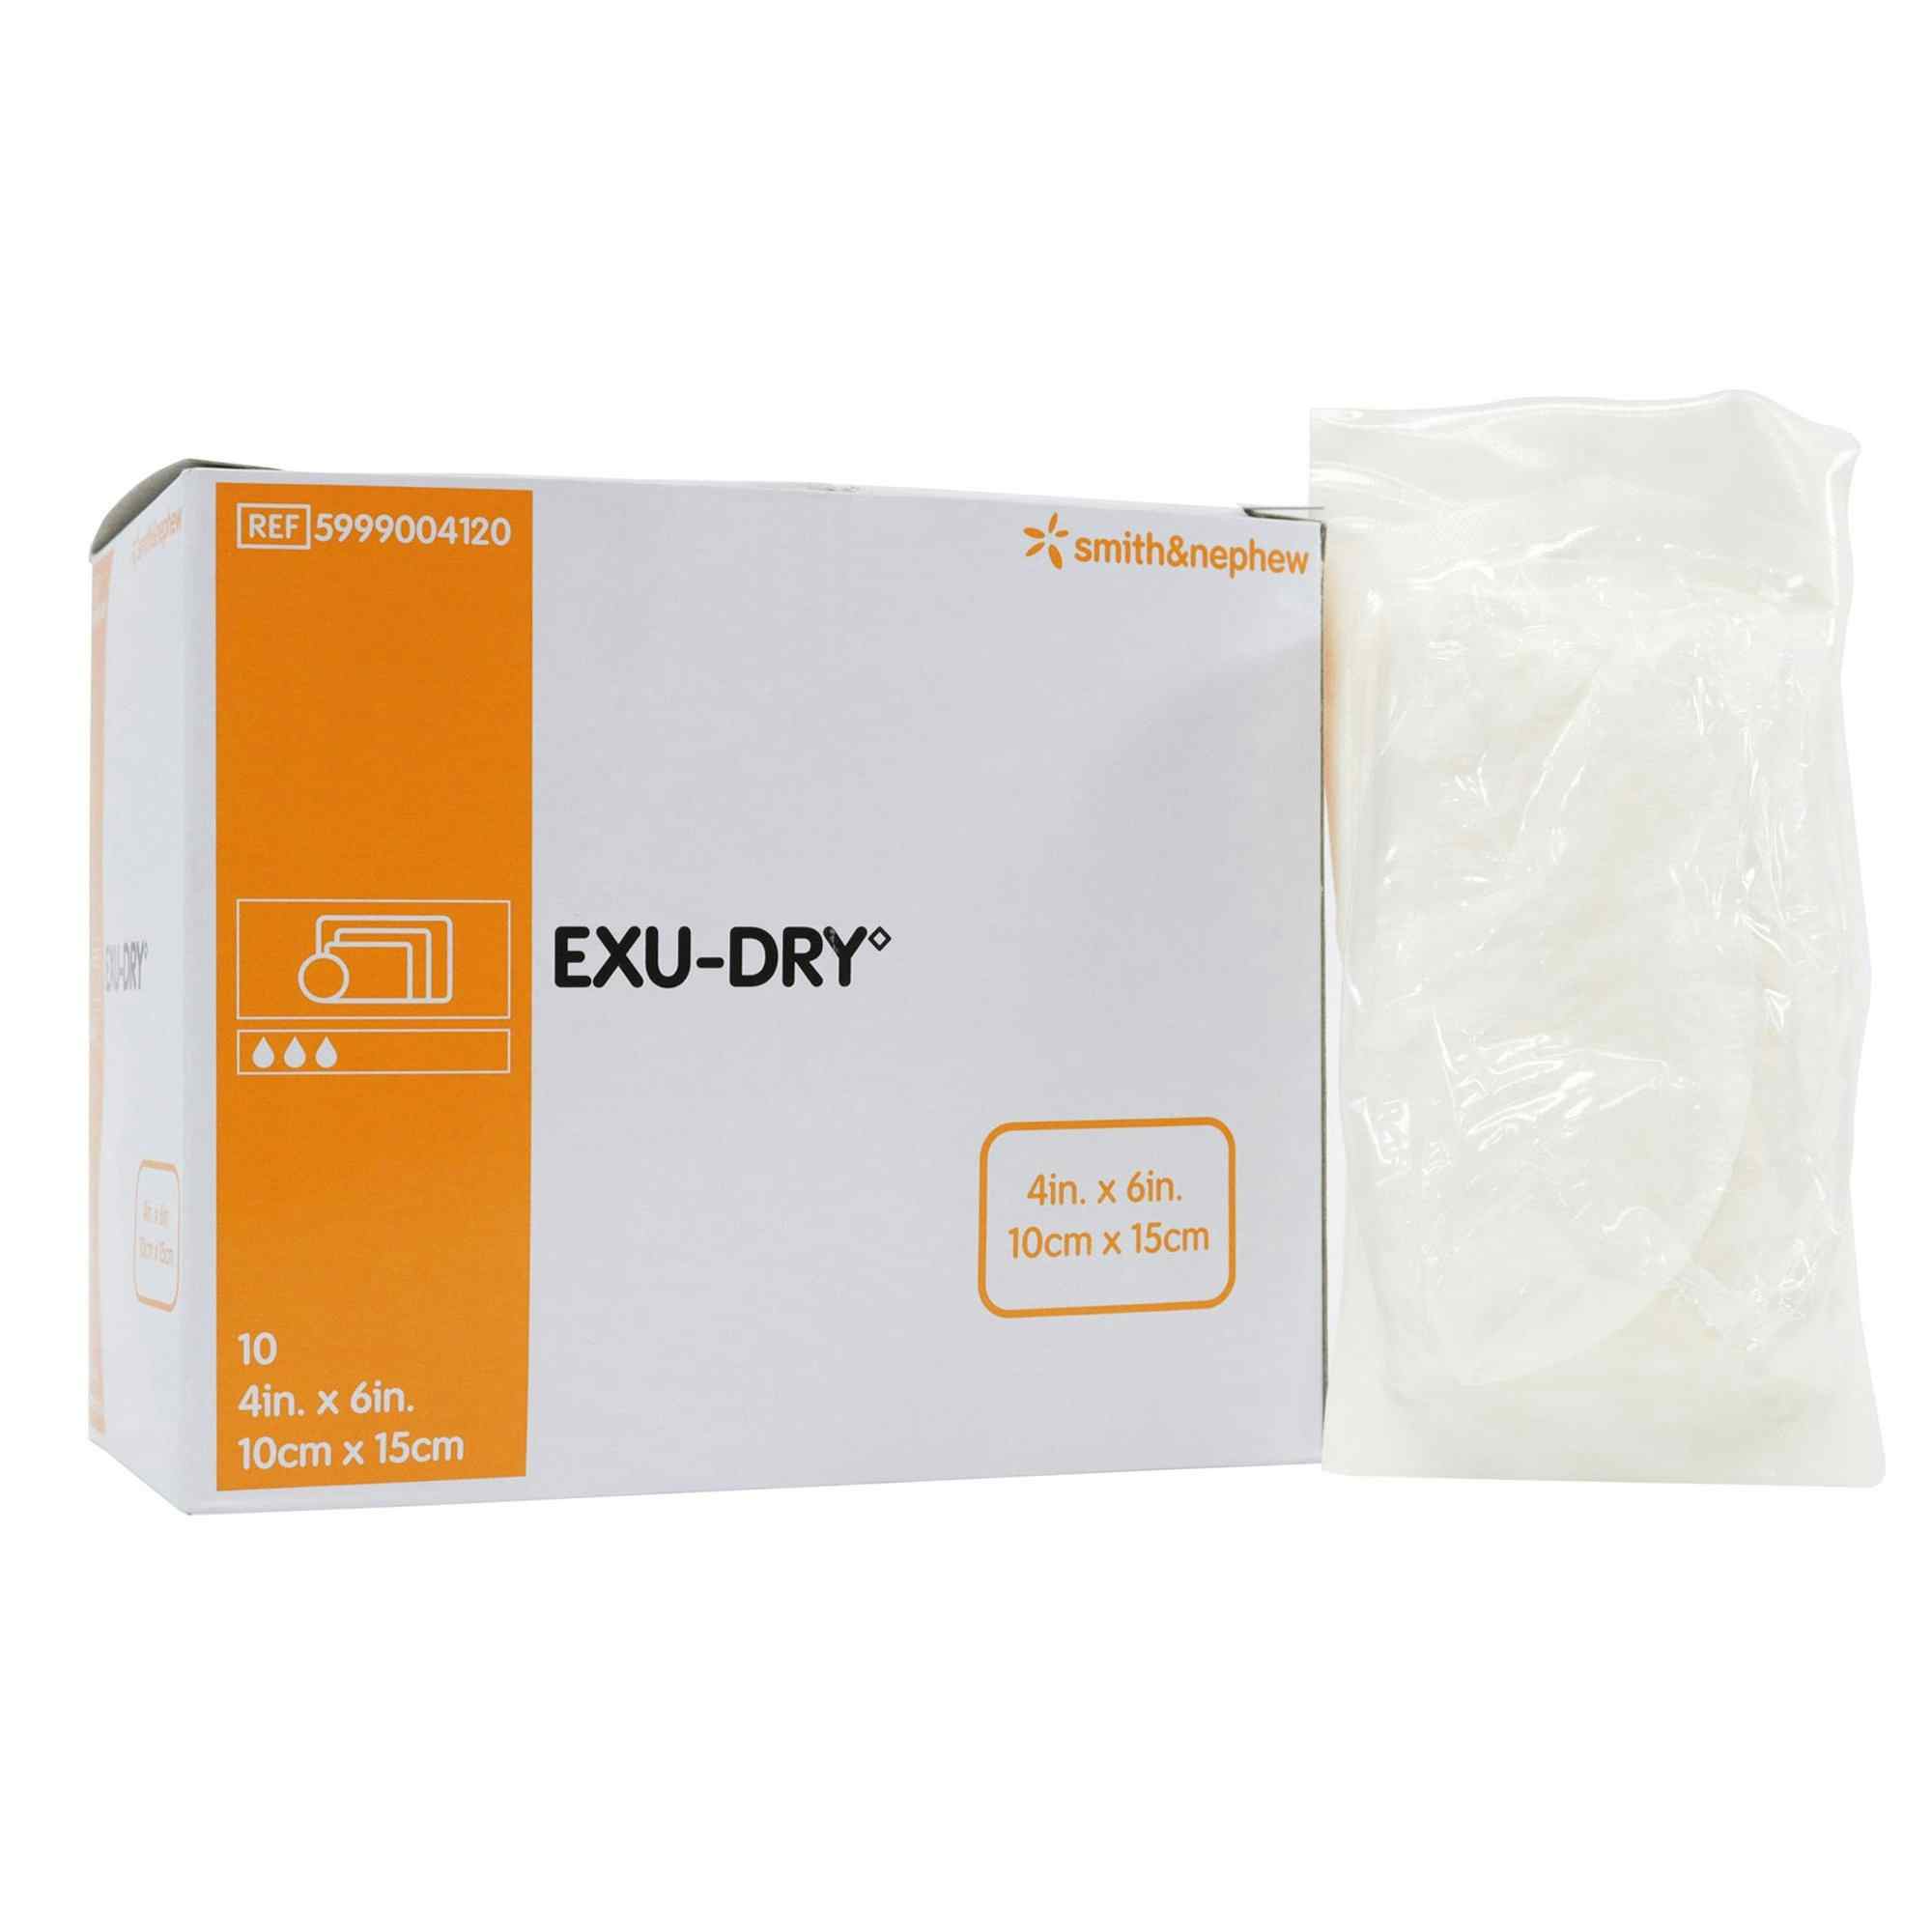 Smith & Nephew Exu-Dry Anti-Shear Absorbent Dressing, 4 X 6", 5999004120, Box of 10